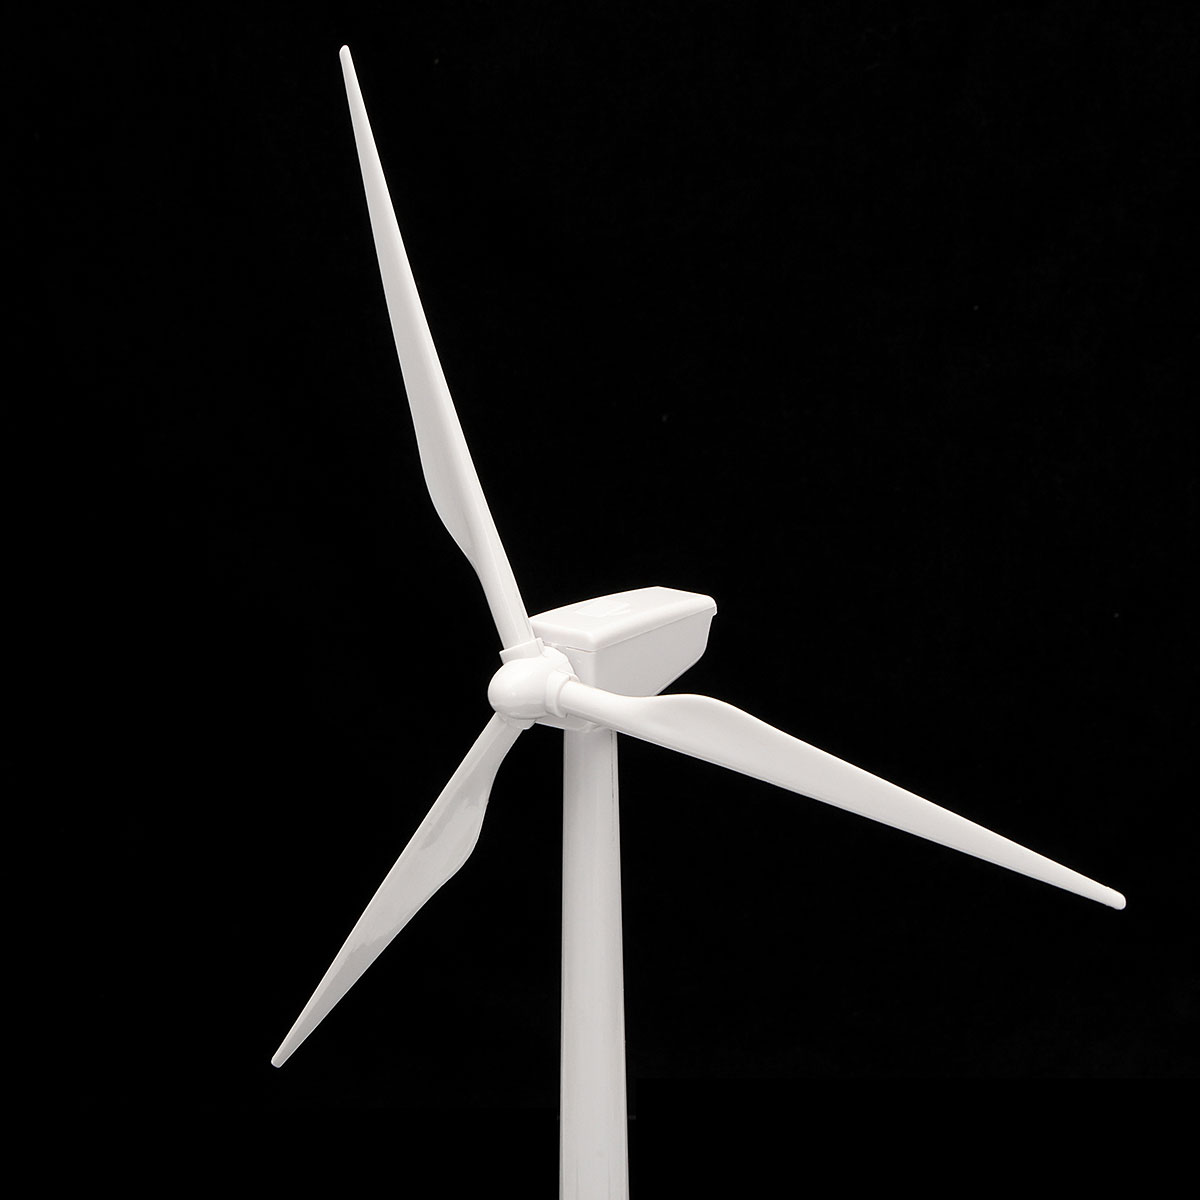 Plastic-Solar-Powered-Windmill-Wind-Mill-Turbine-Teaching-Tool--Desktop-Display-Tray-Holder-1059506-2